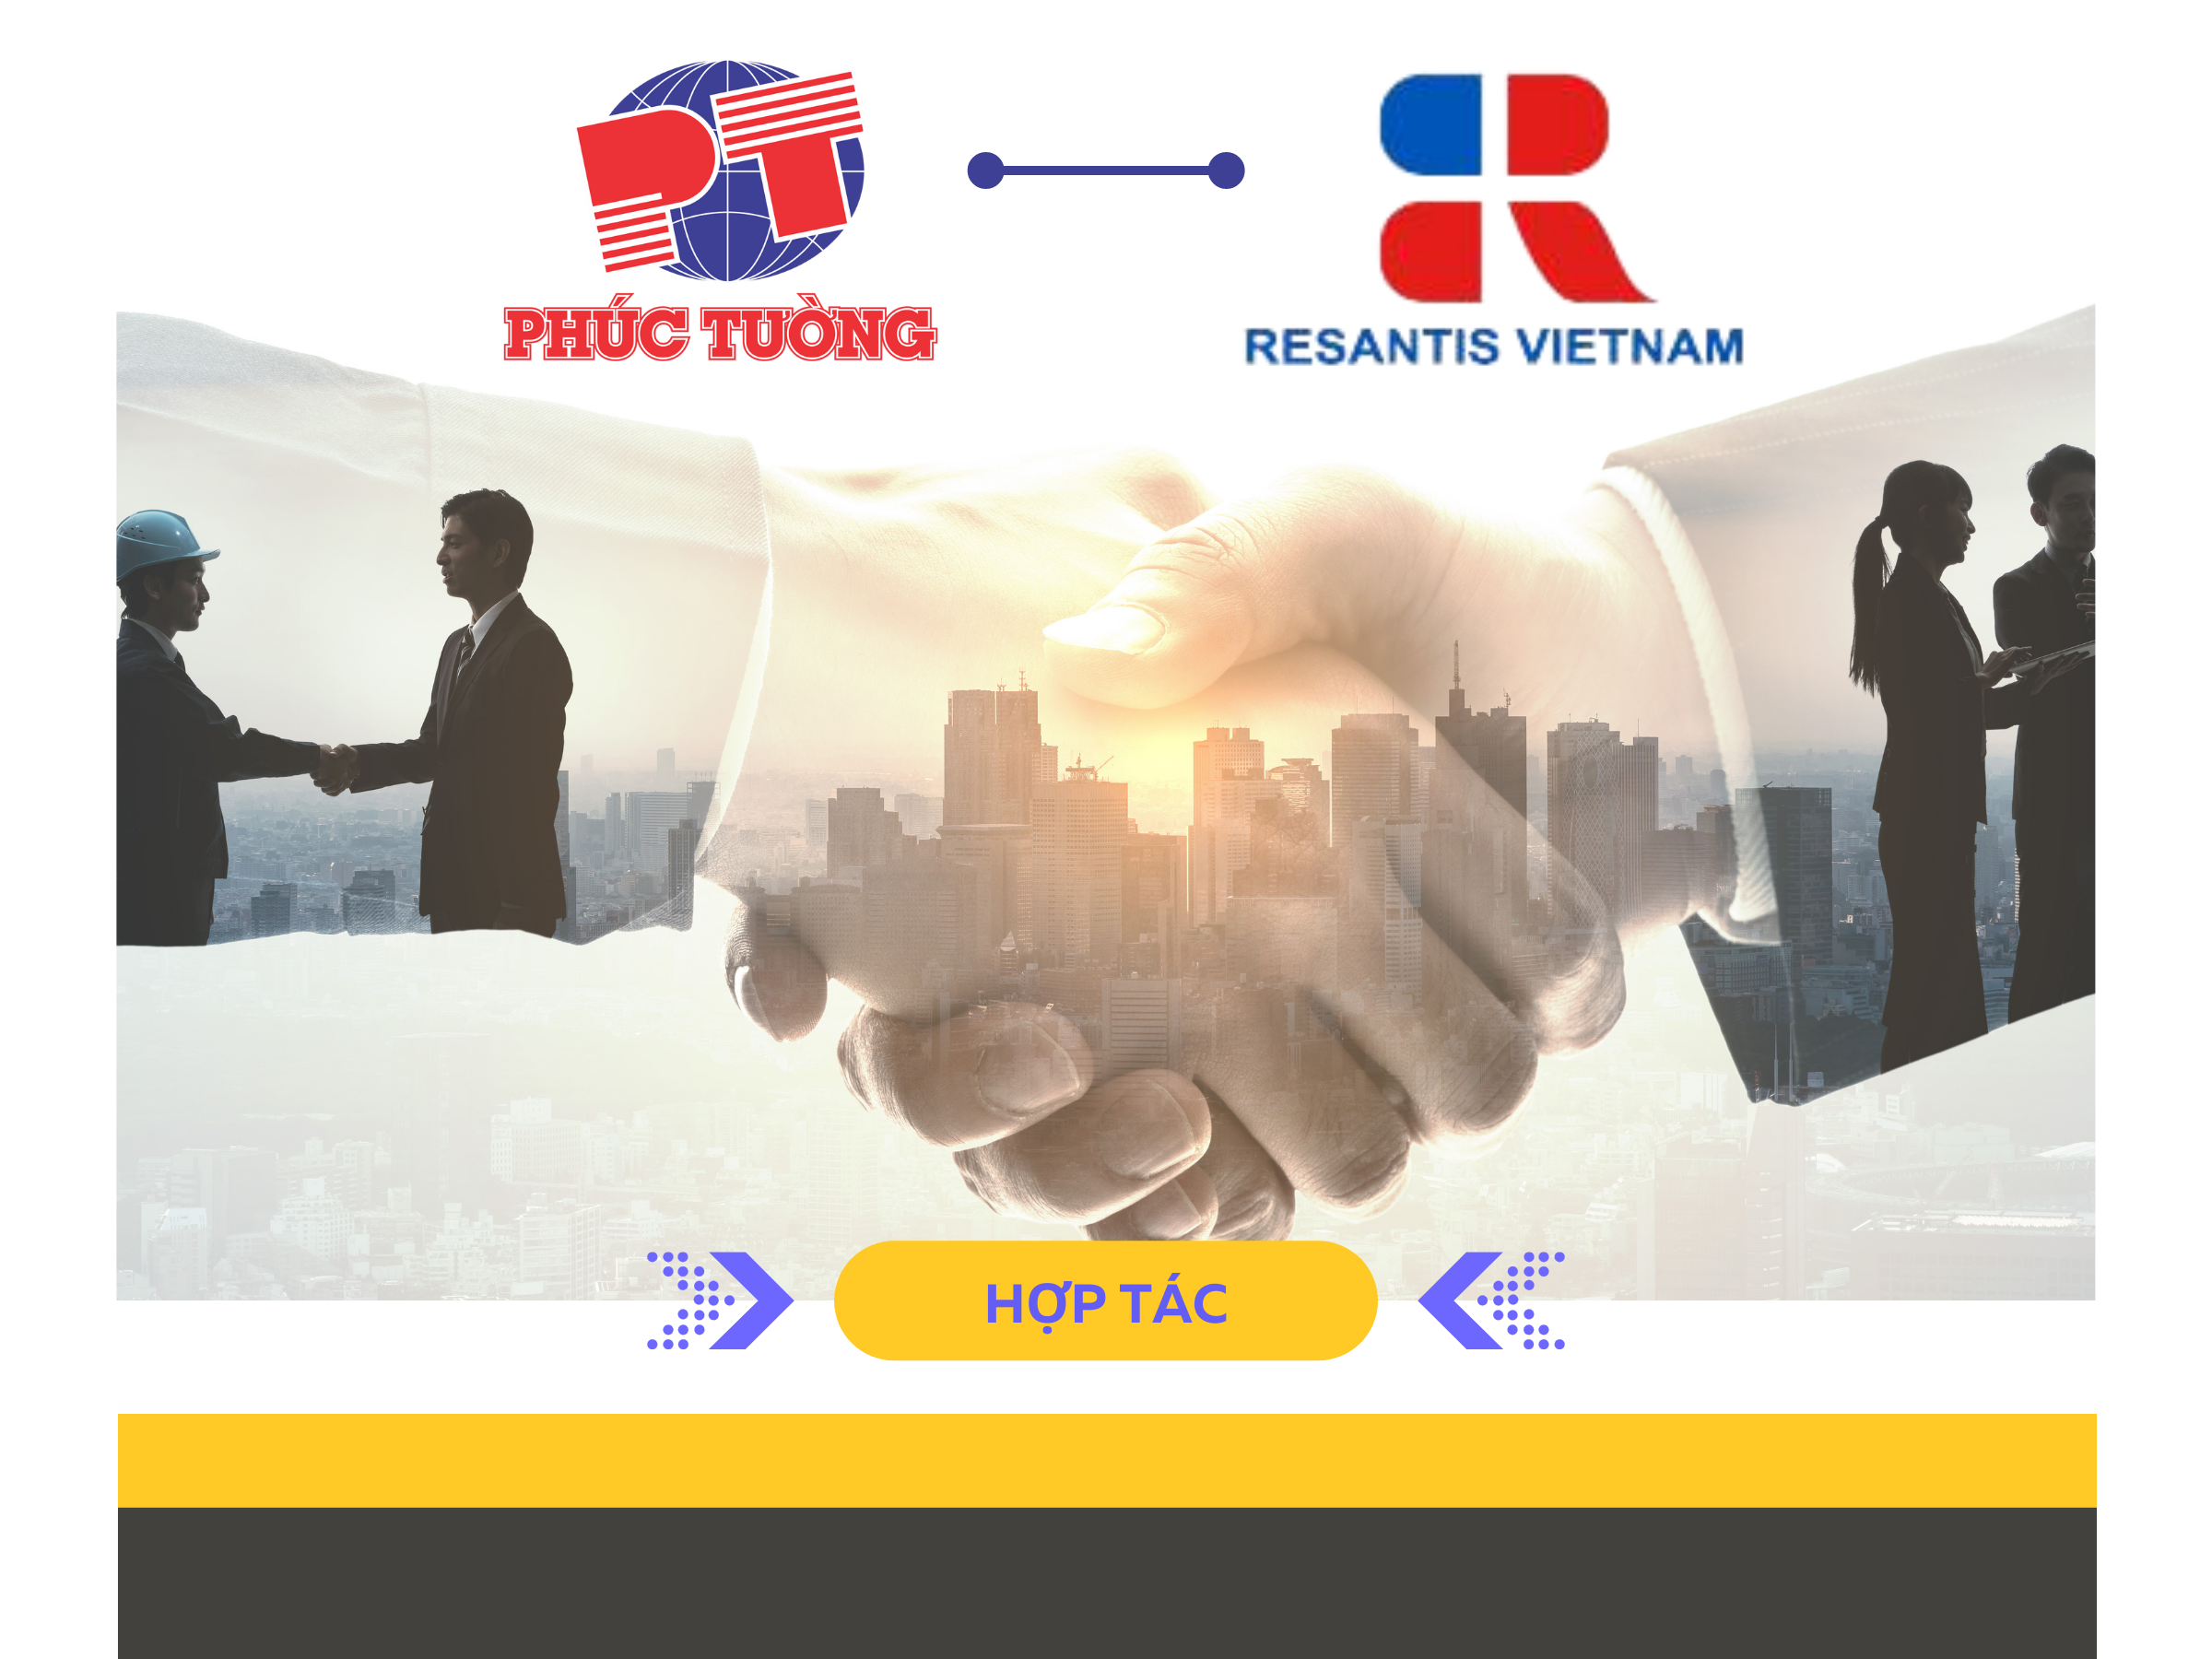 Dược phẩm Phúc Tường hợp tác Resantis Vietnam (Roussel Vietnam)